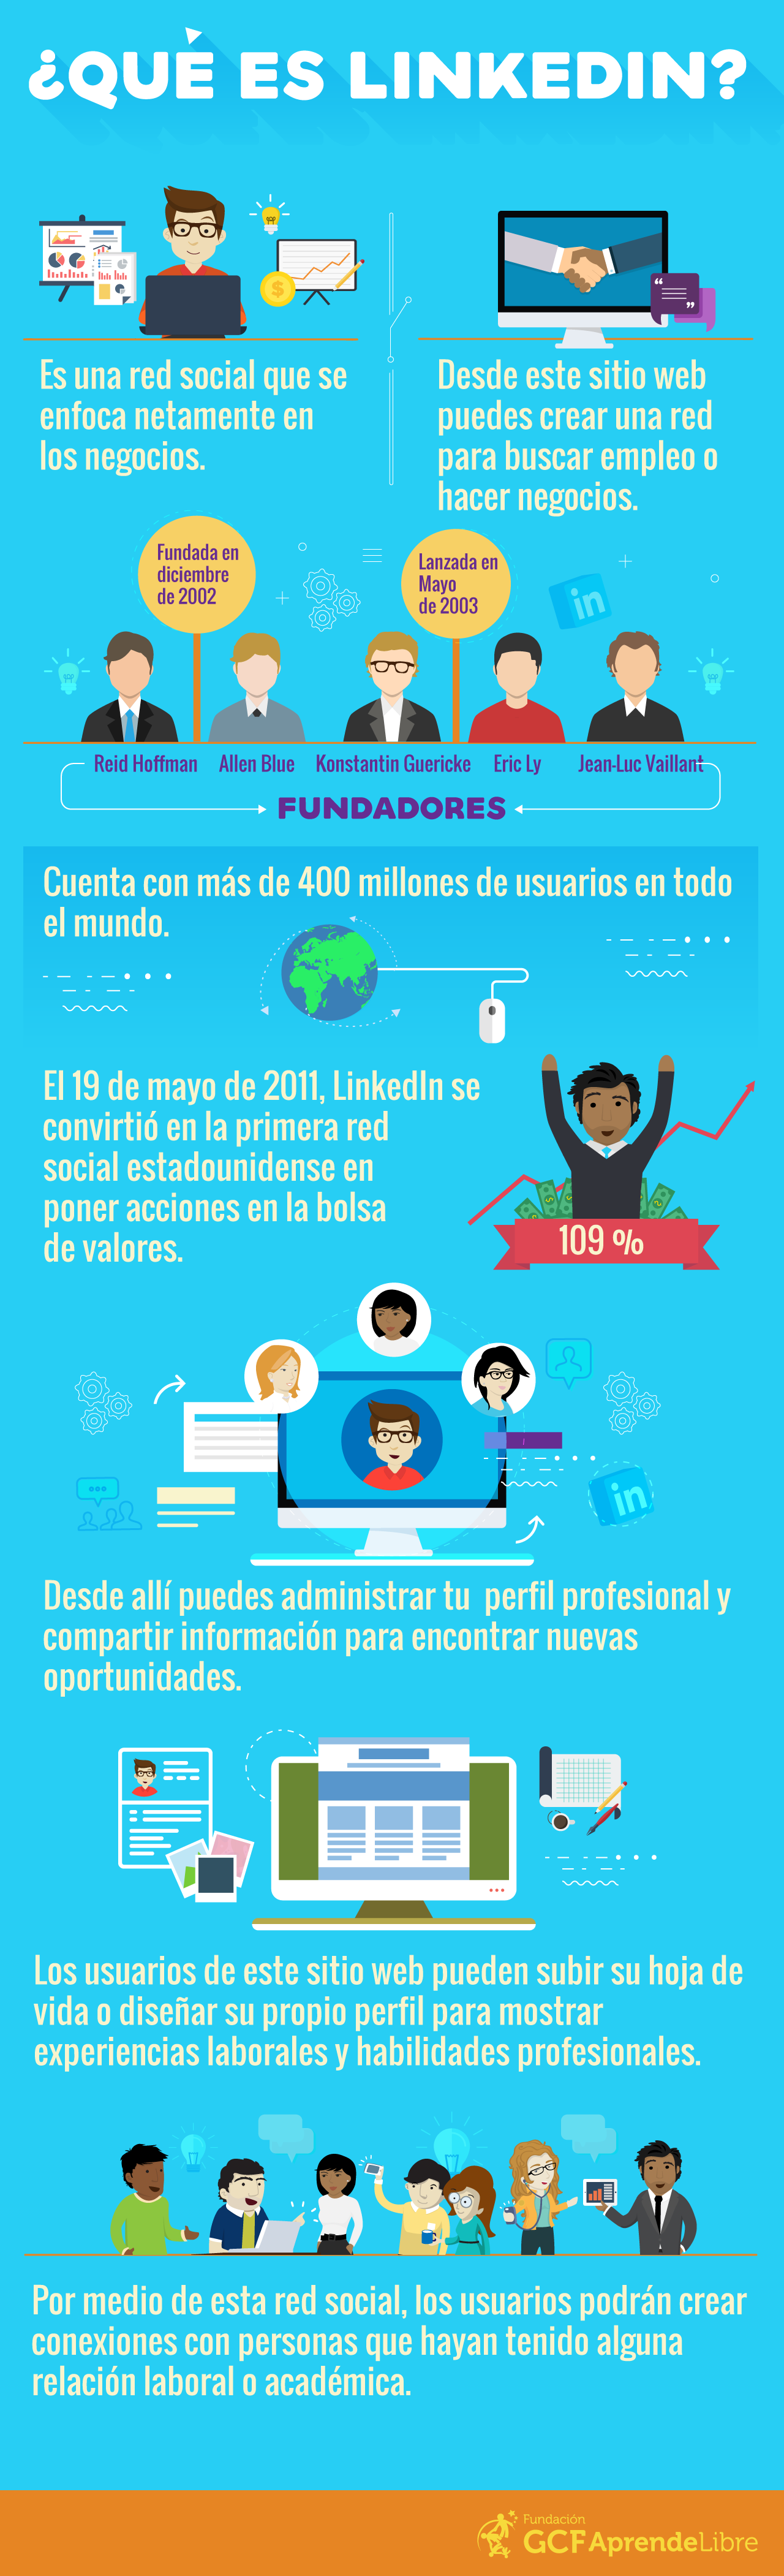 LinkedIn es una red social que se enfoca netamente en los negocios.